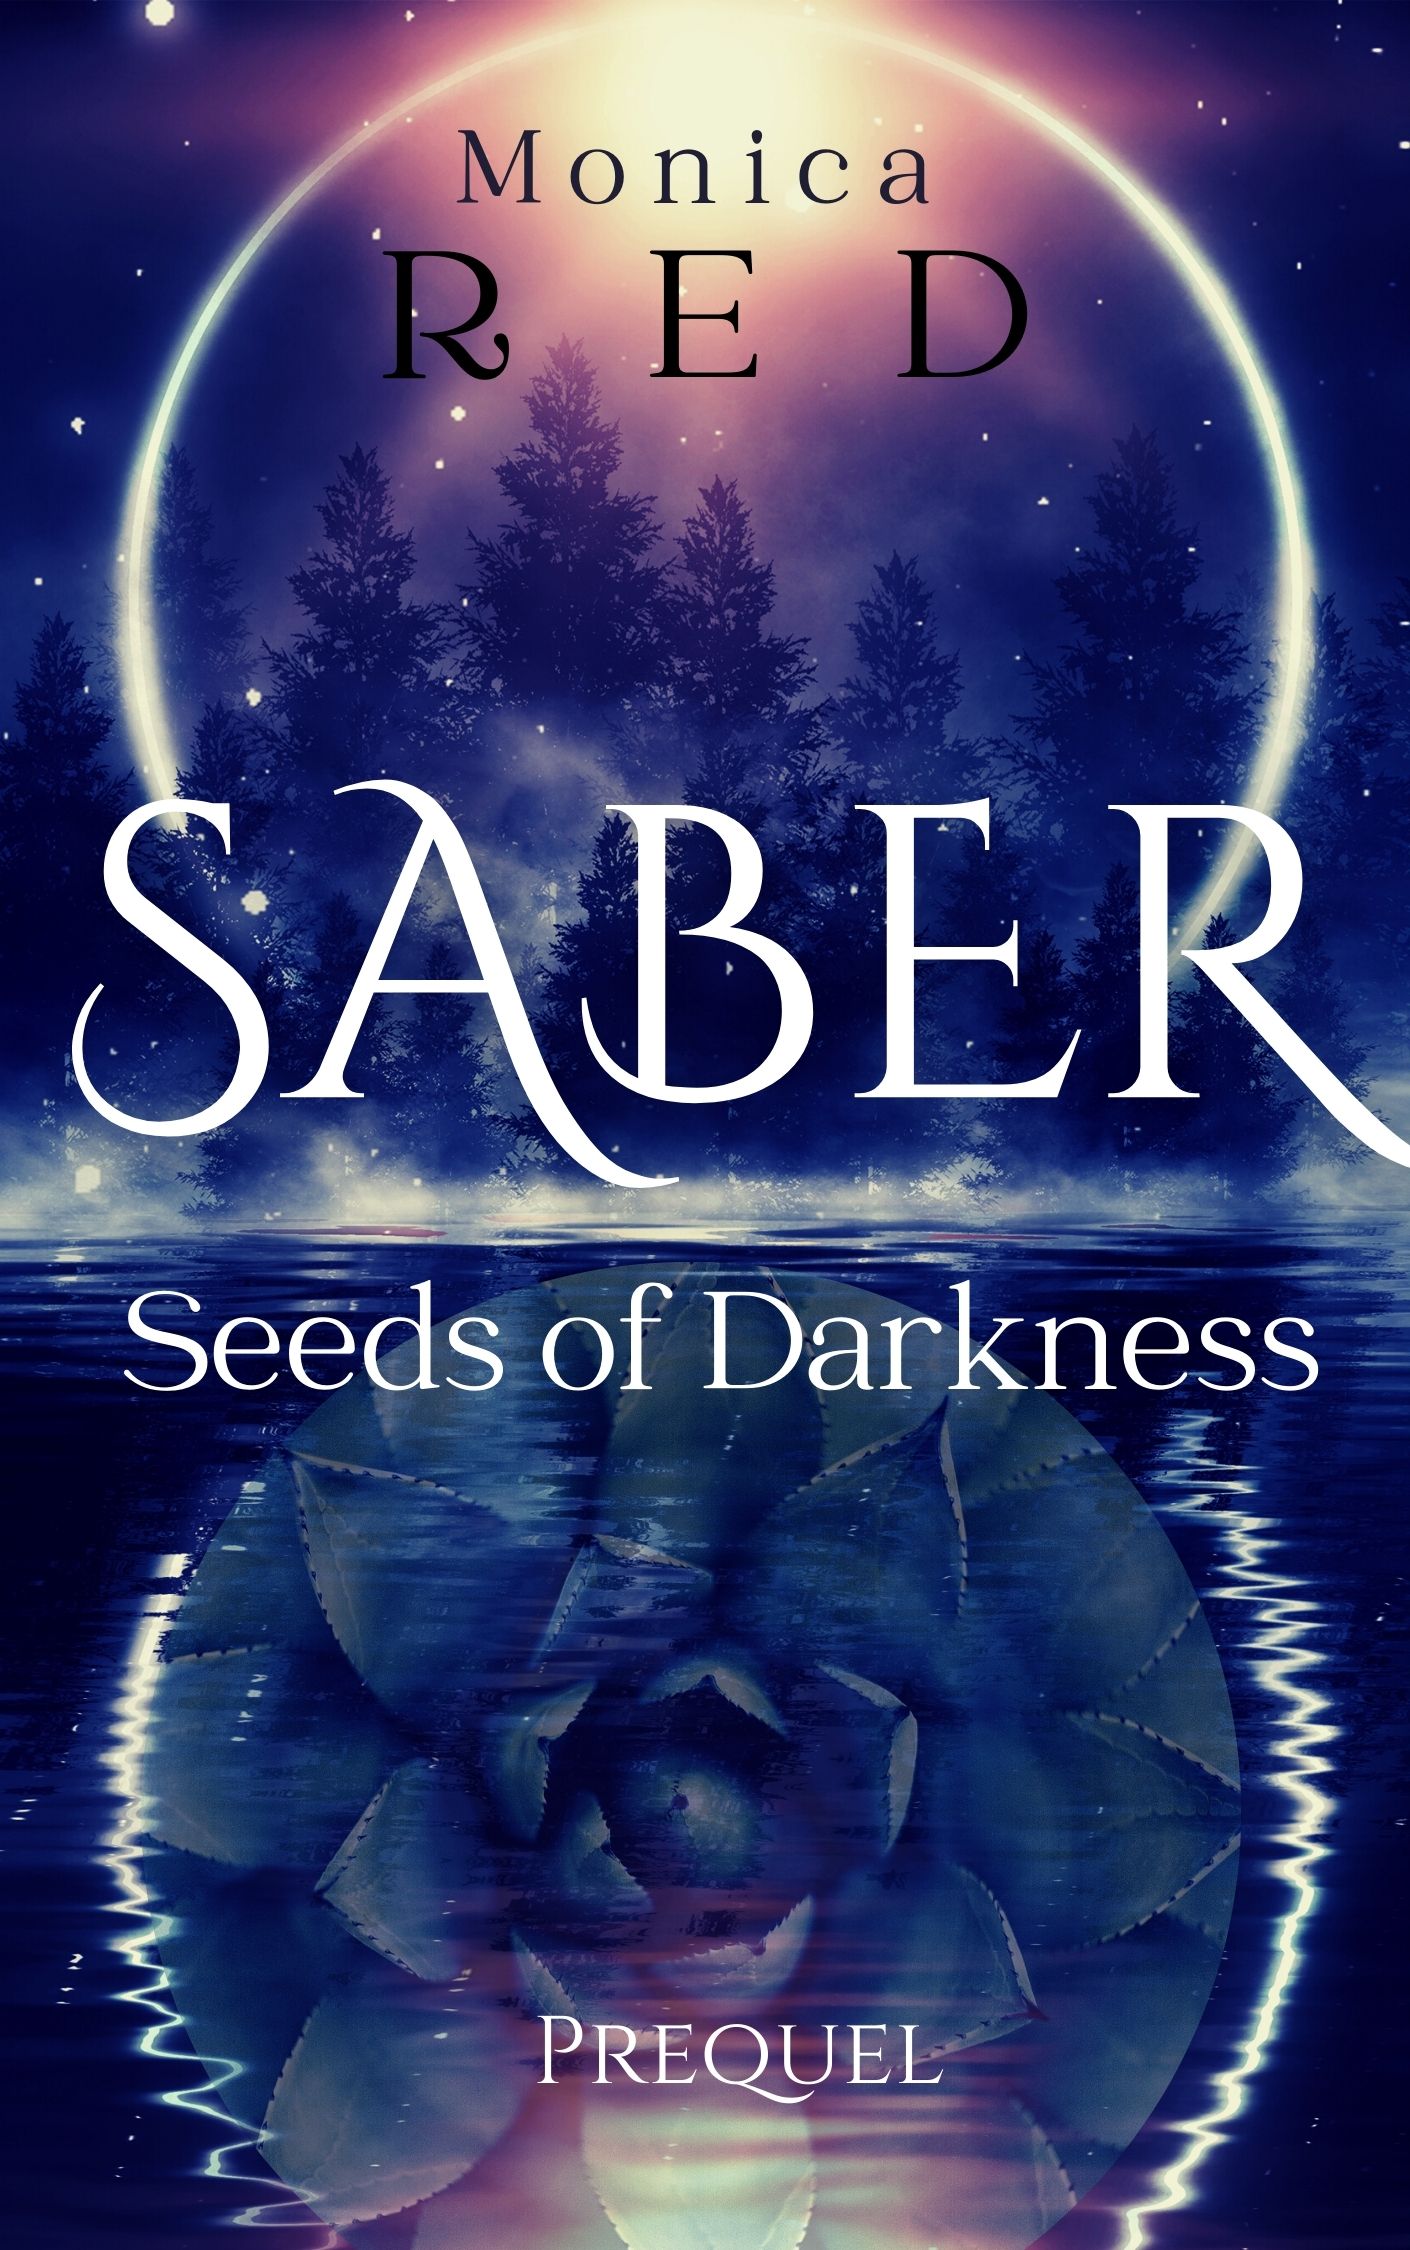 Saber, Seeds of Darkness